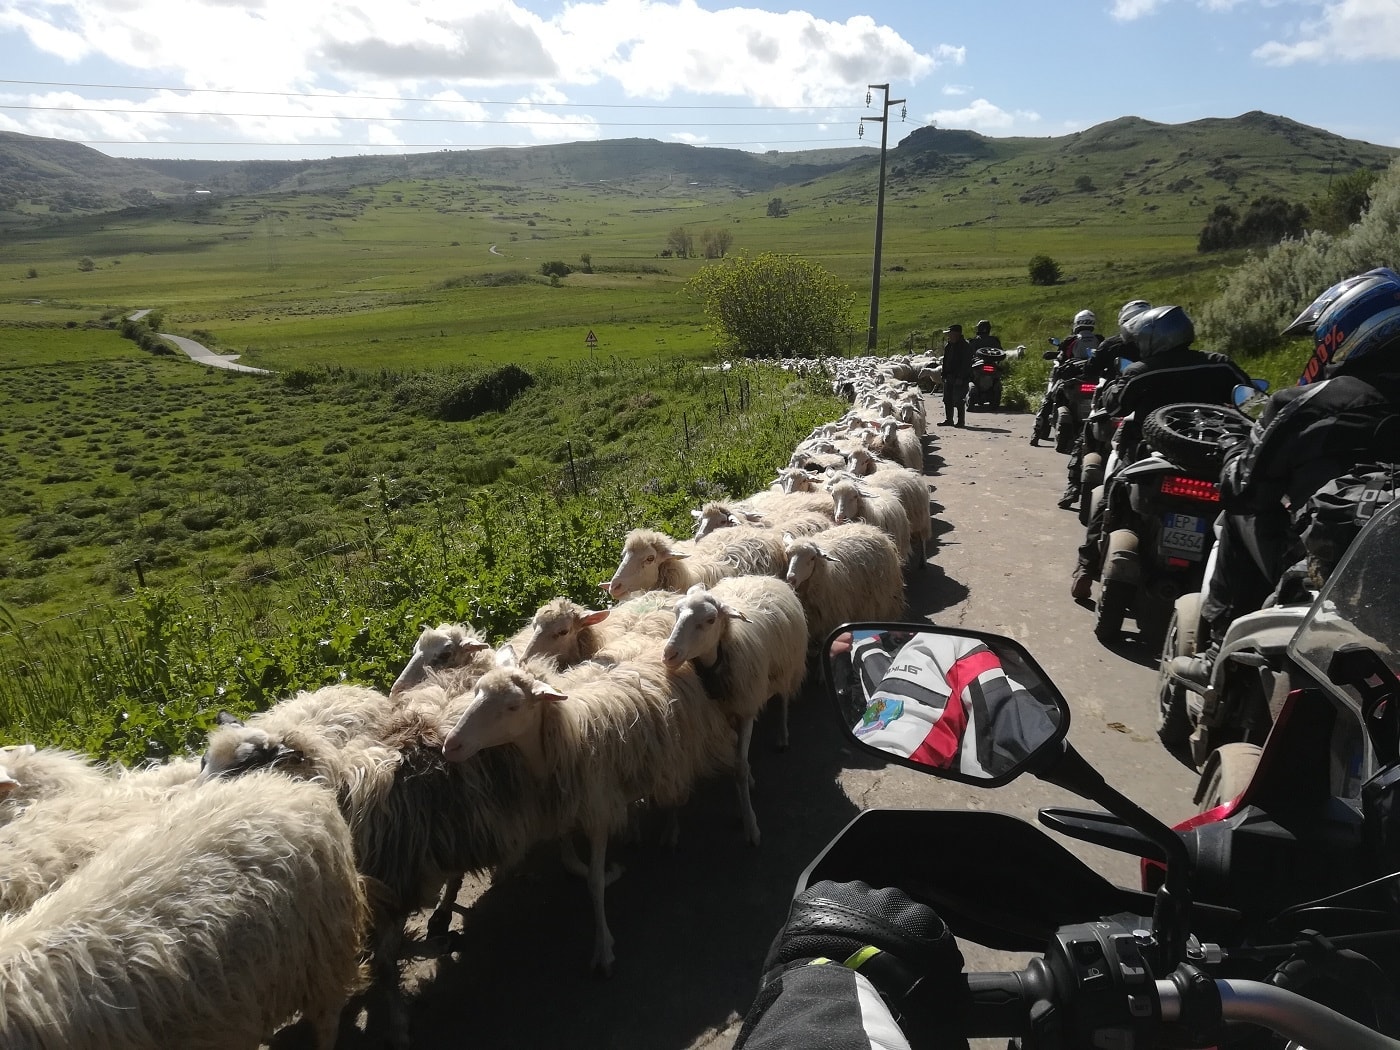 sardegna-gran-tour-moto-gregge-pecore